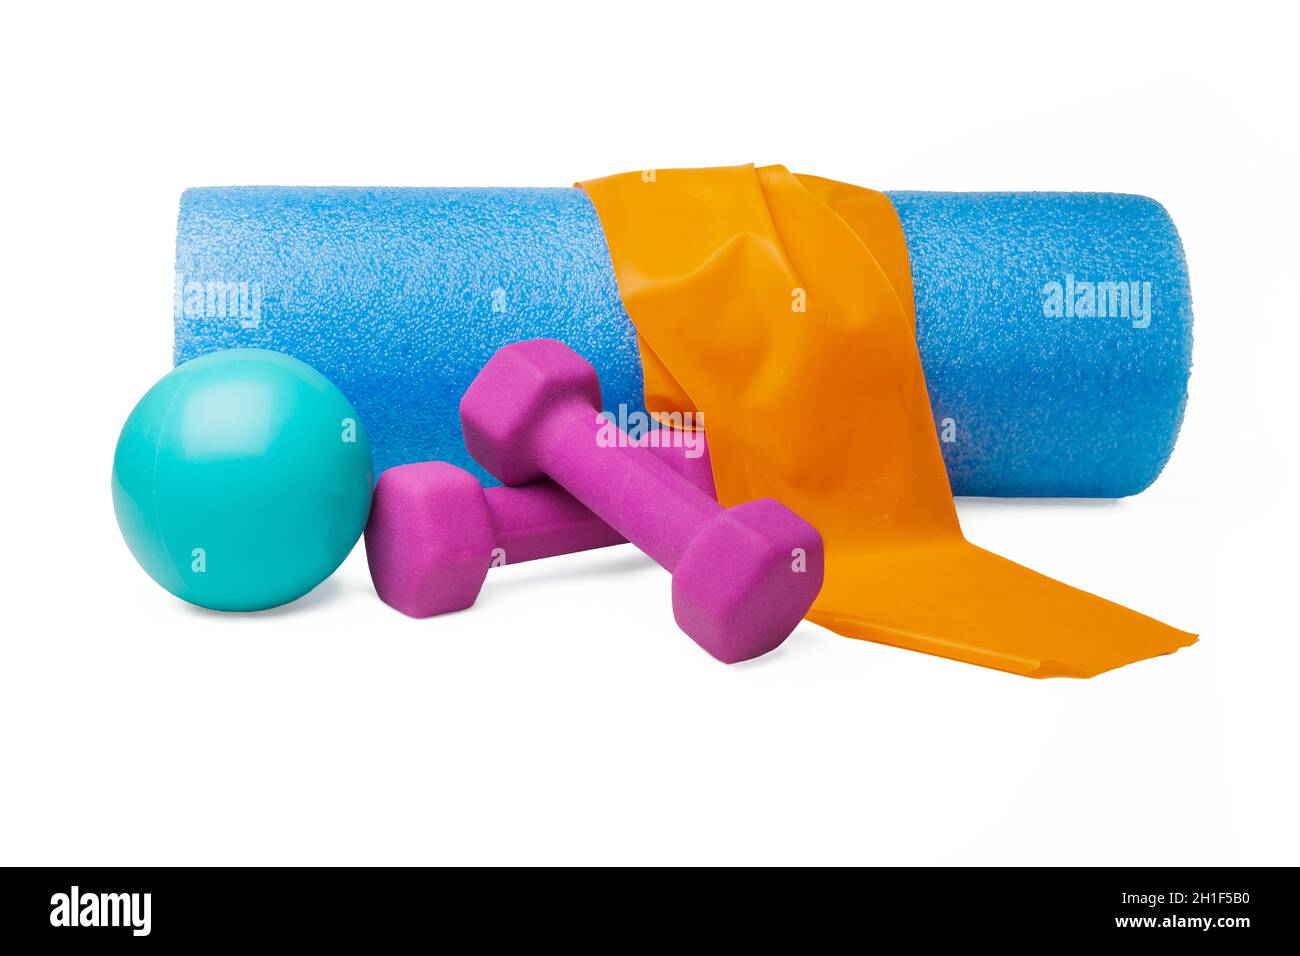 Exercise equipment including band, massage ball, dumbbellsand foam roller Stock Photo